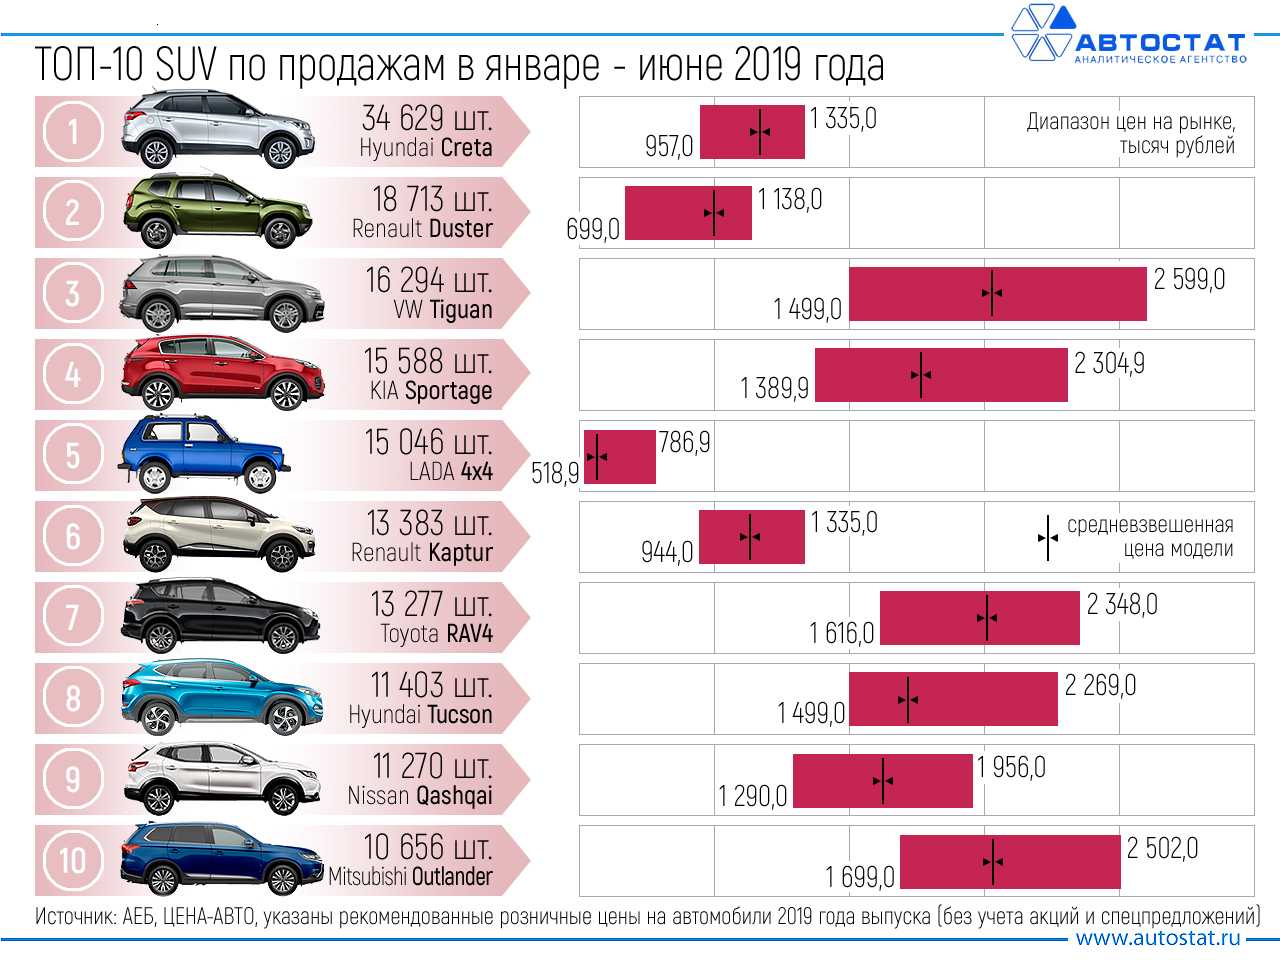 Представляем вашему вниманию рейтинг лучших автомобилей класса люкс В него вошли только новые машины, которые продаются сейчас на территории Российской Федерации